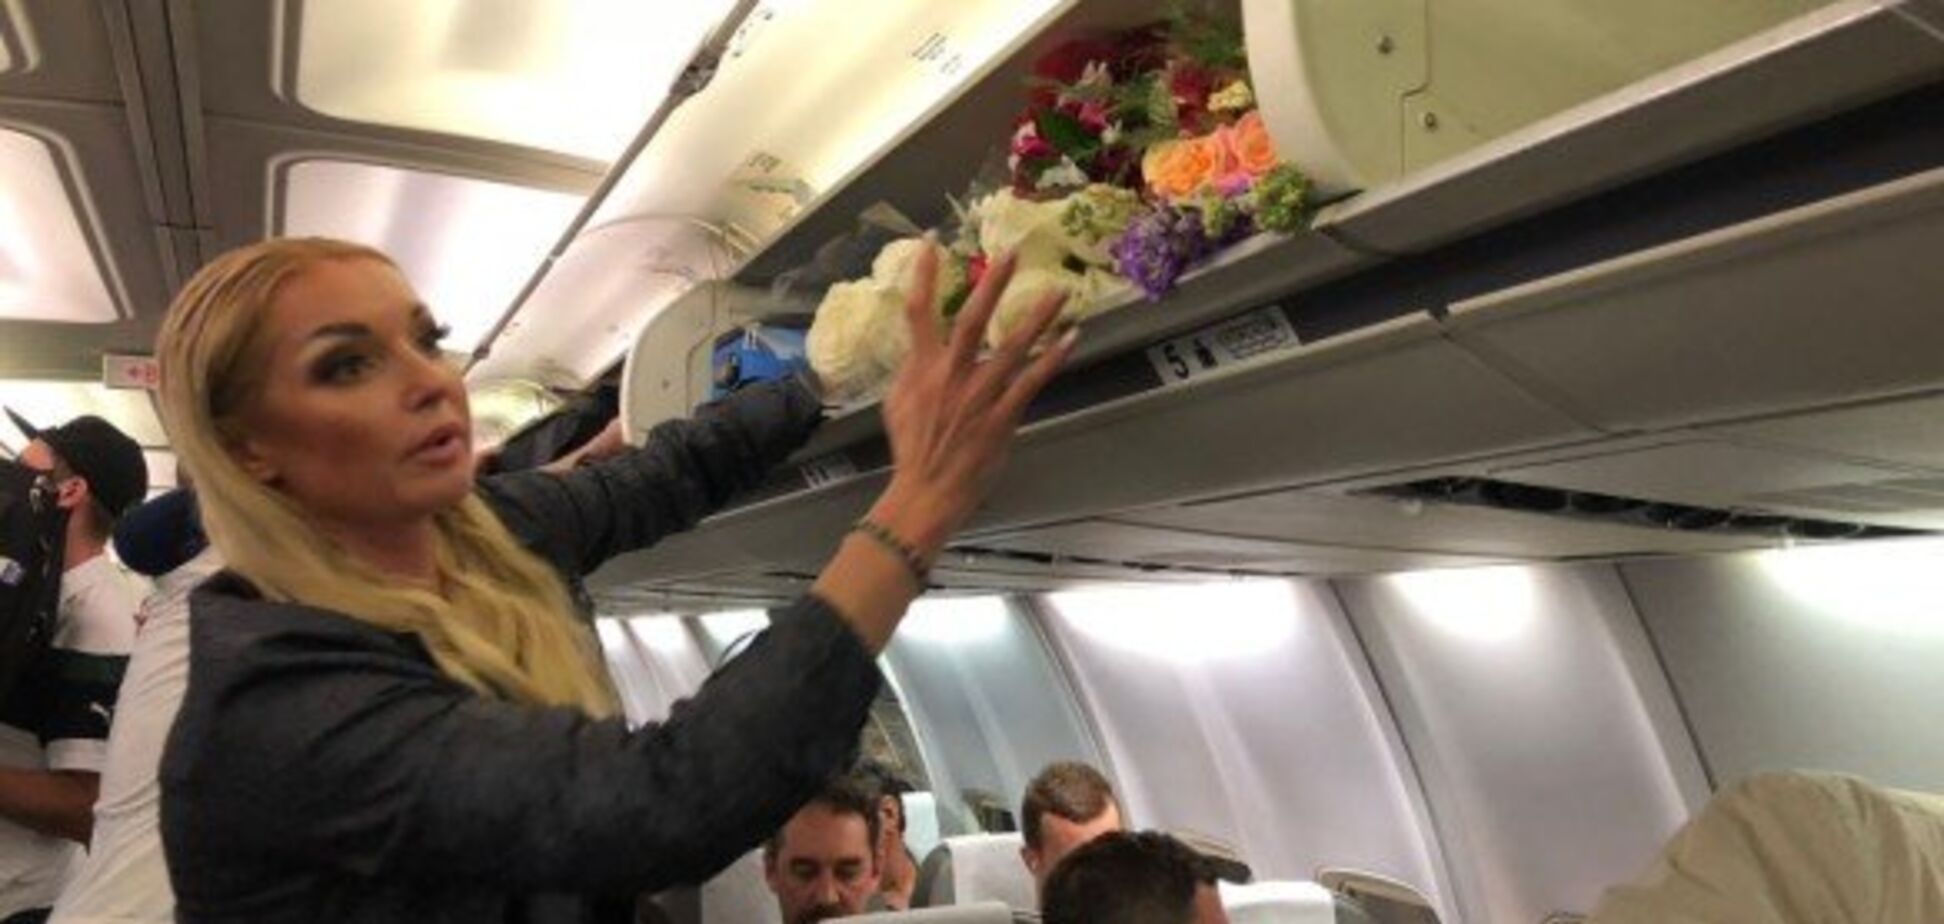 Розлютила пасажирів: Волочкова вляпалася в скандал в літаку